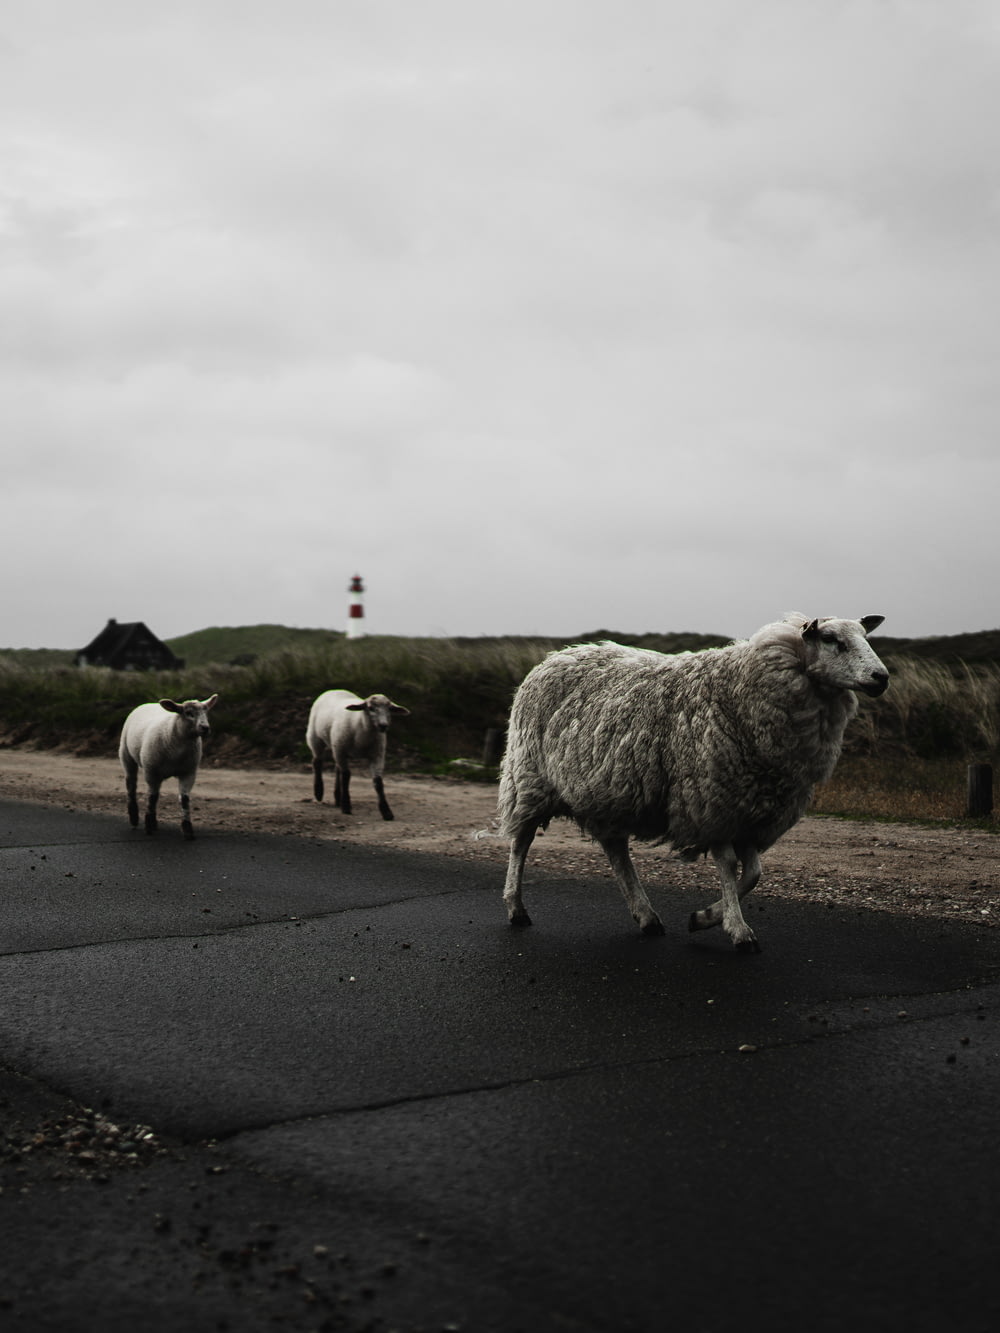 gregge di pecore sulla strada asfaltata grigia sotto il cielo nuvoloso bianco durante il giorno